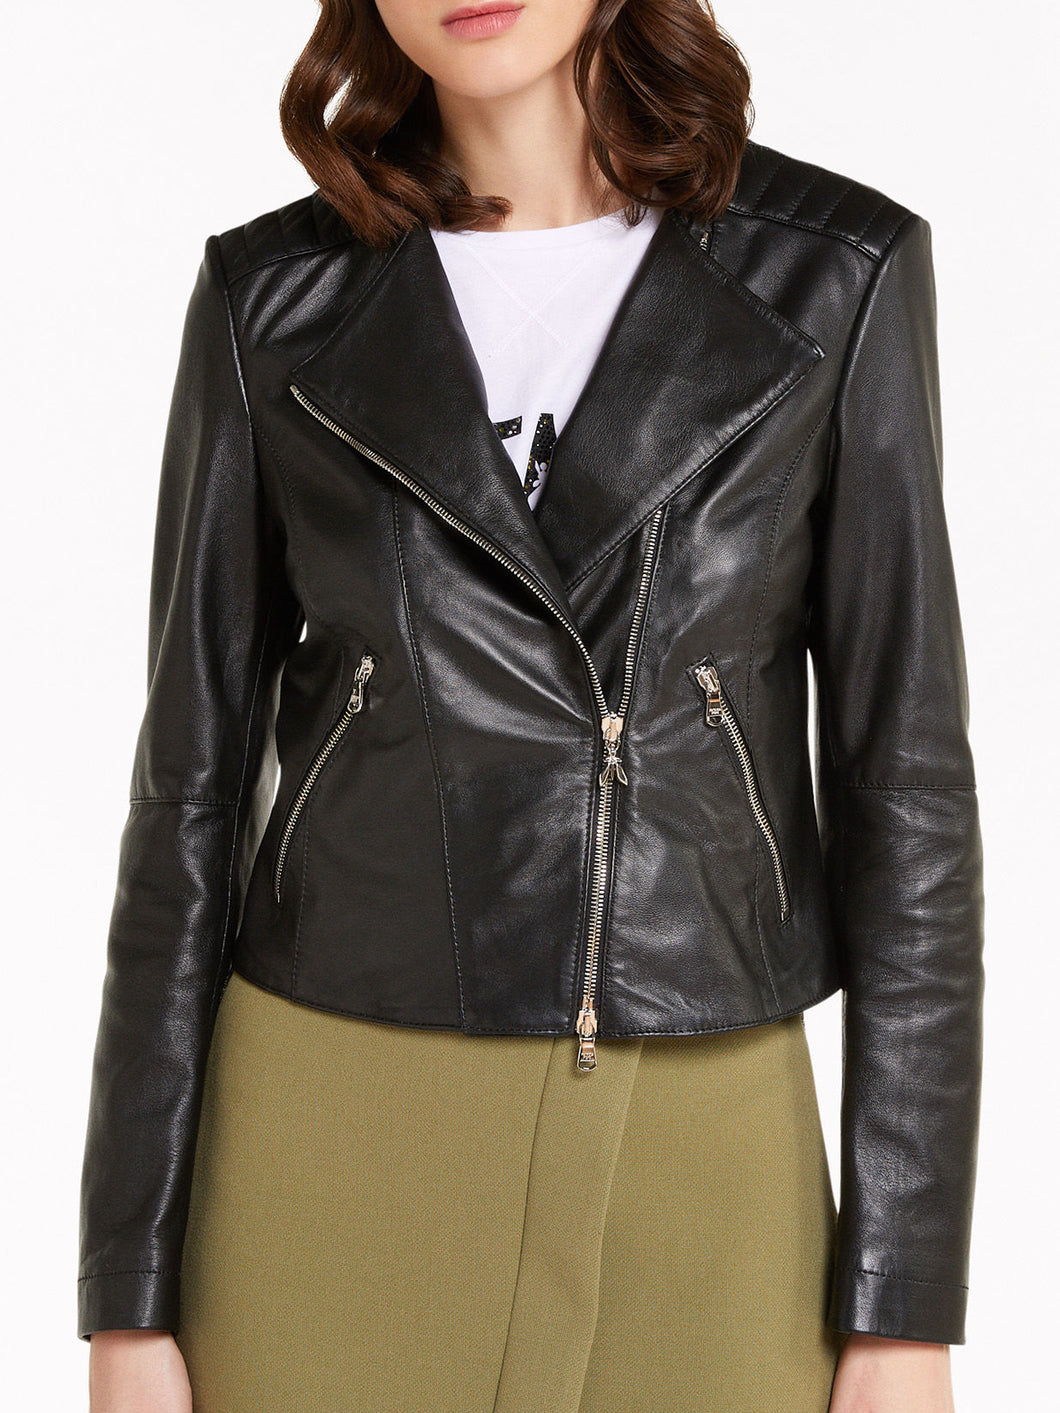 Black Crew-neck Stylish Leather Jacket